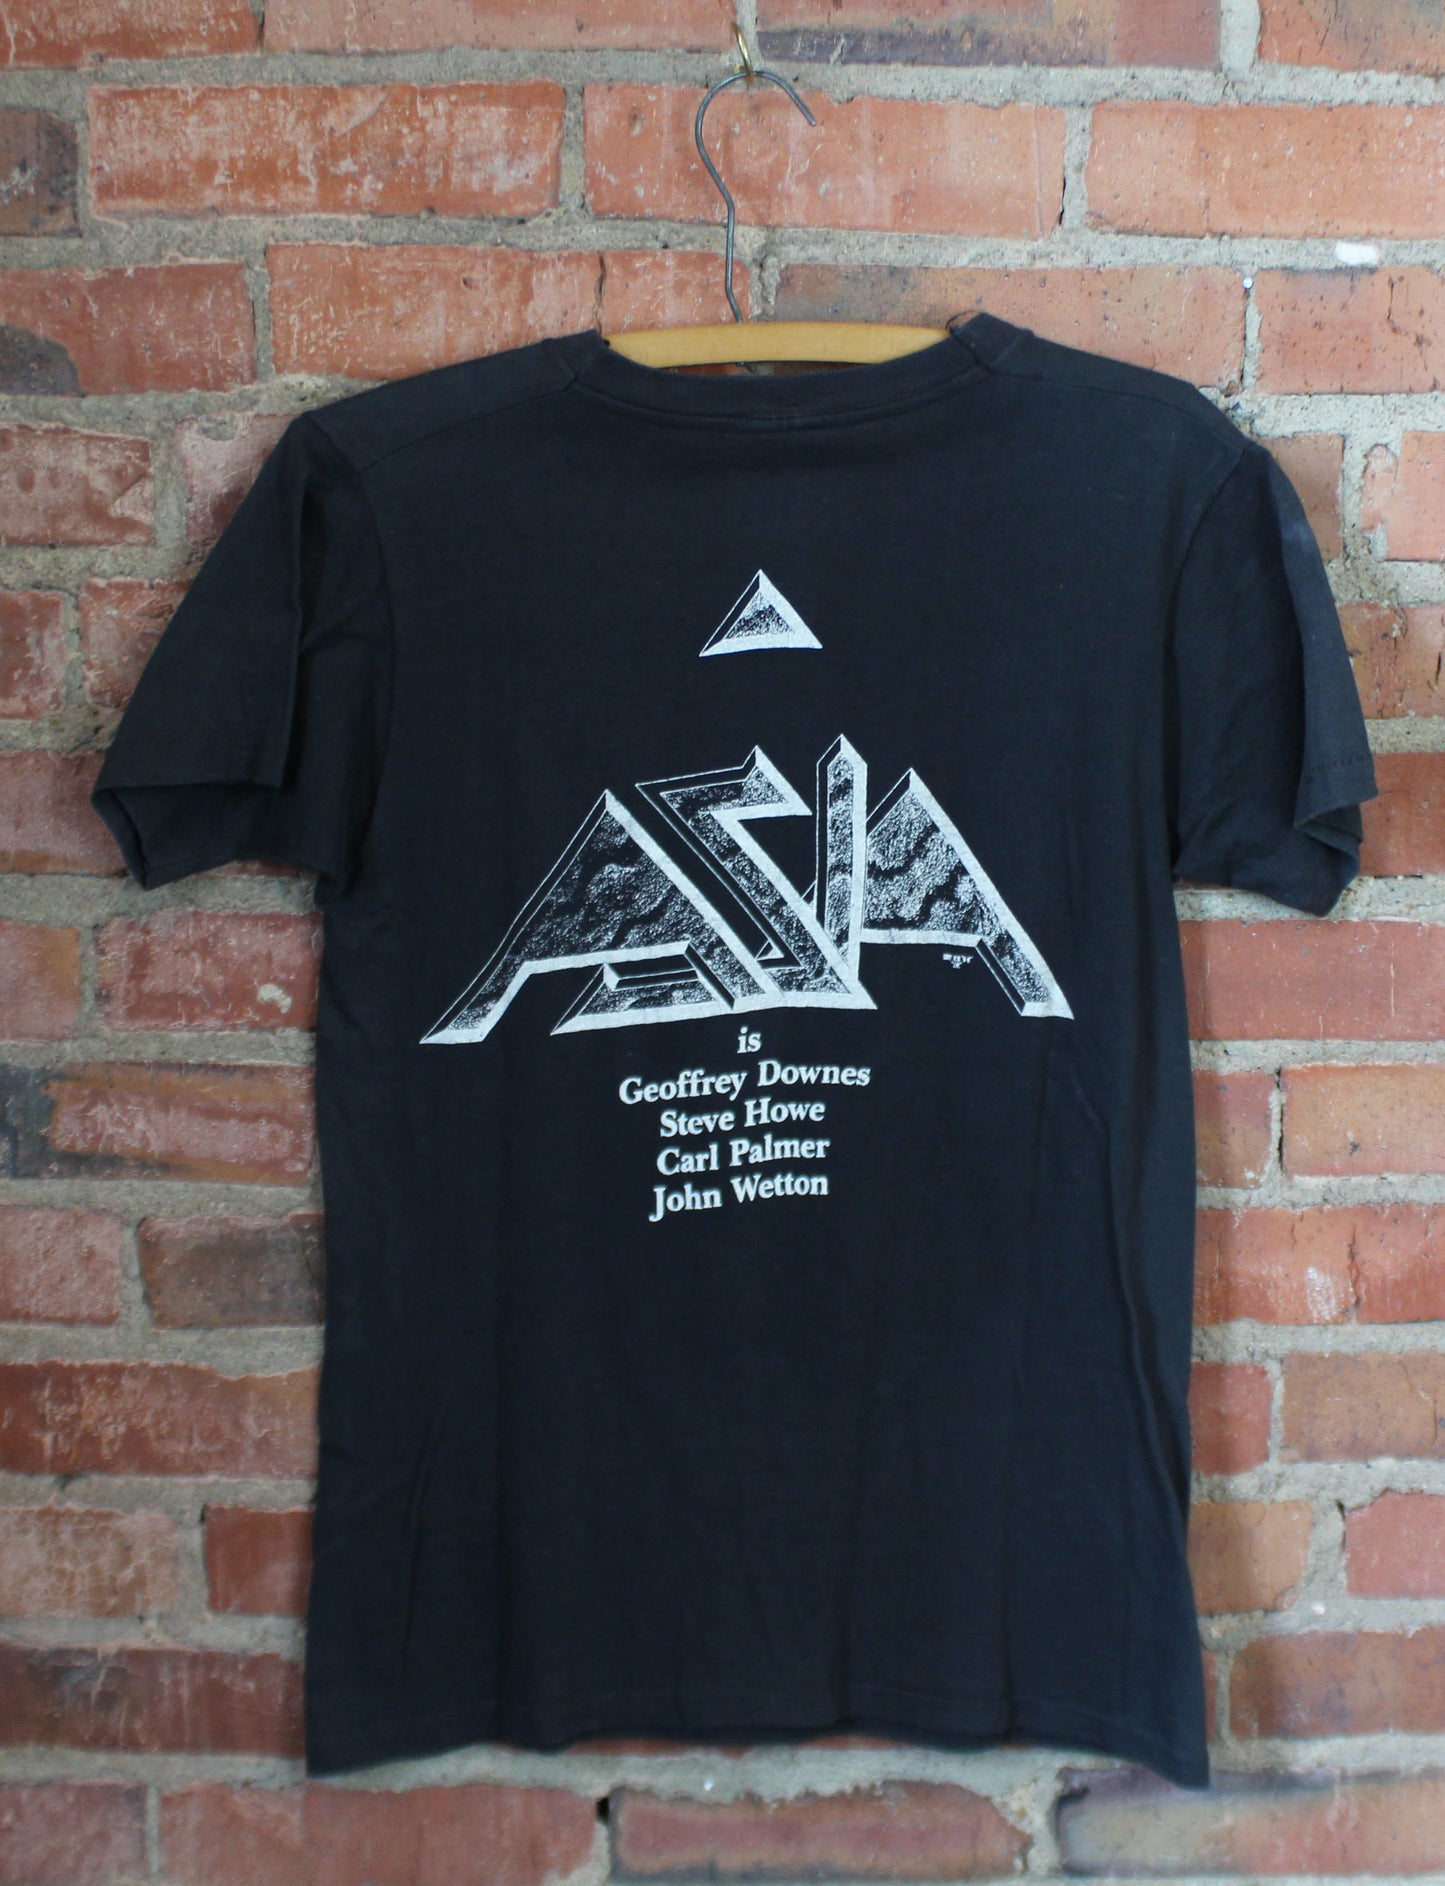 Vintage Asia Concert T Shirt Tour 1982 Small